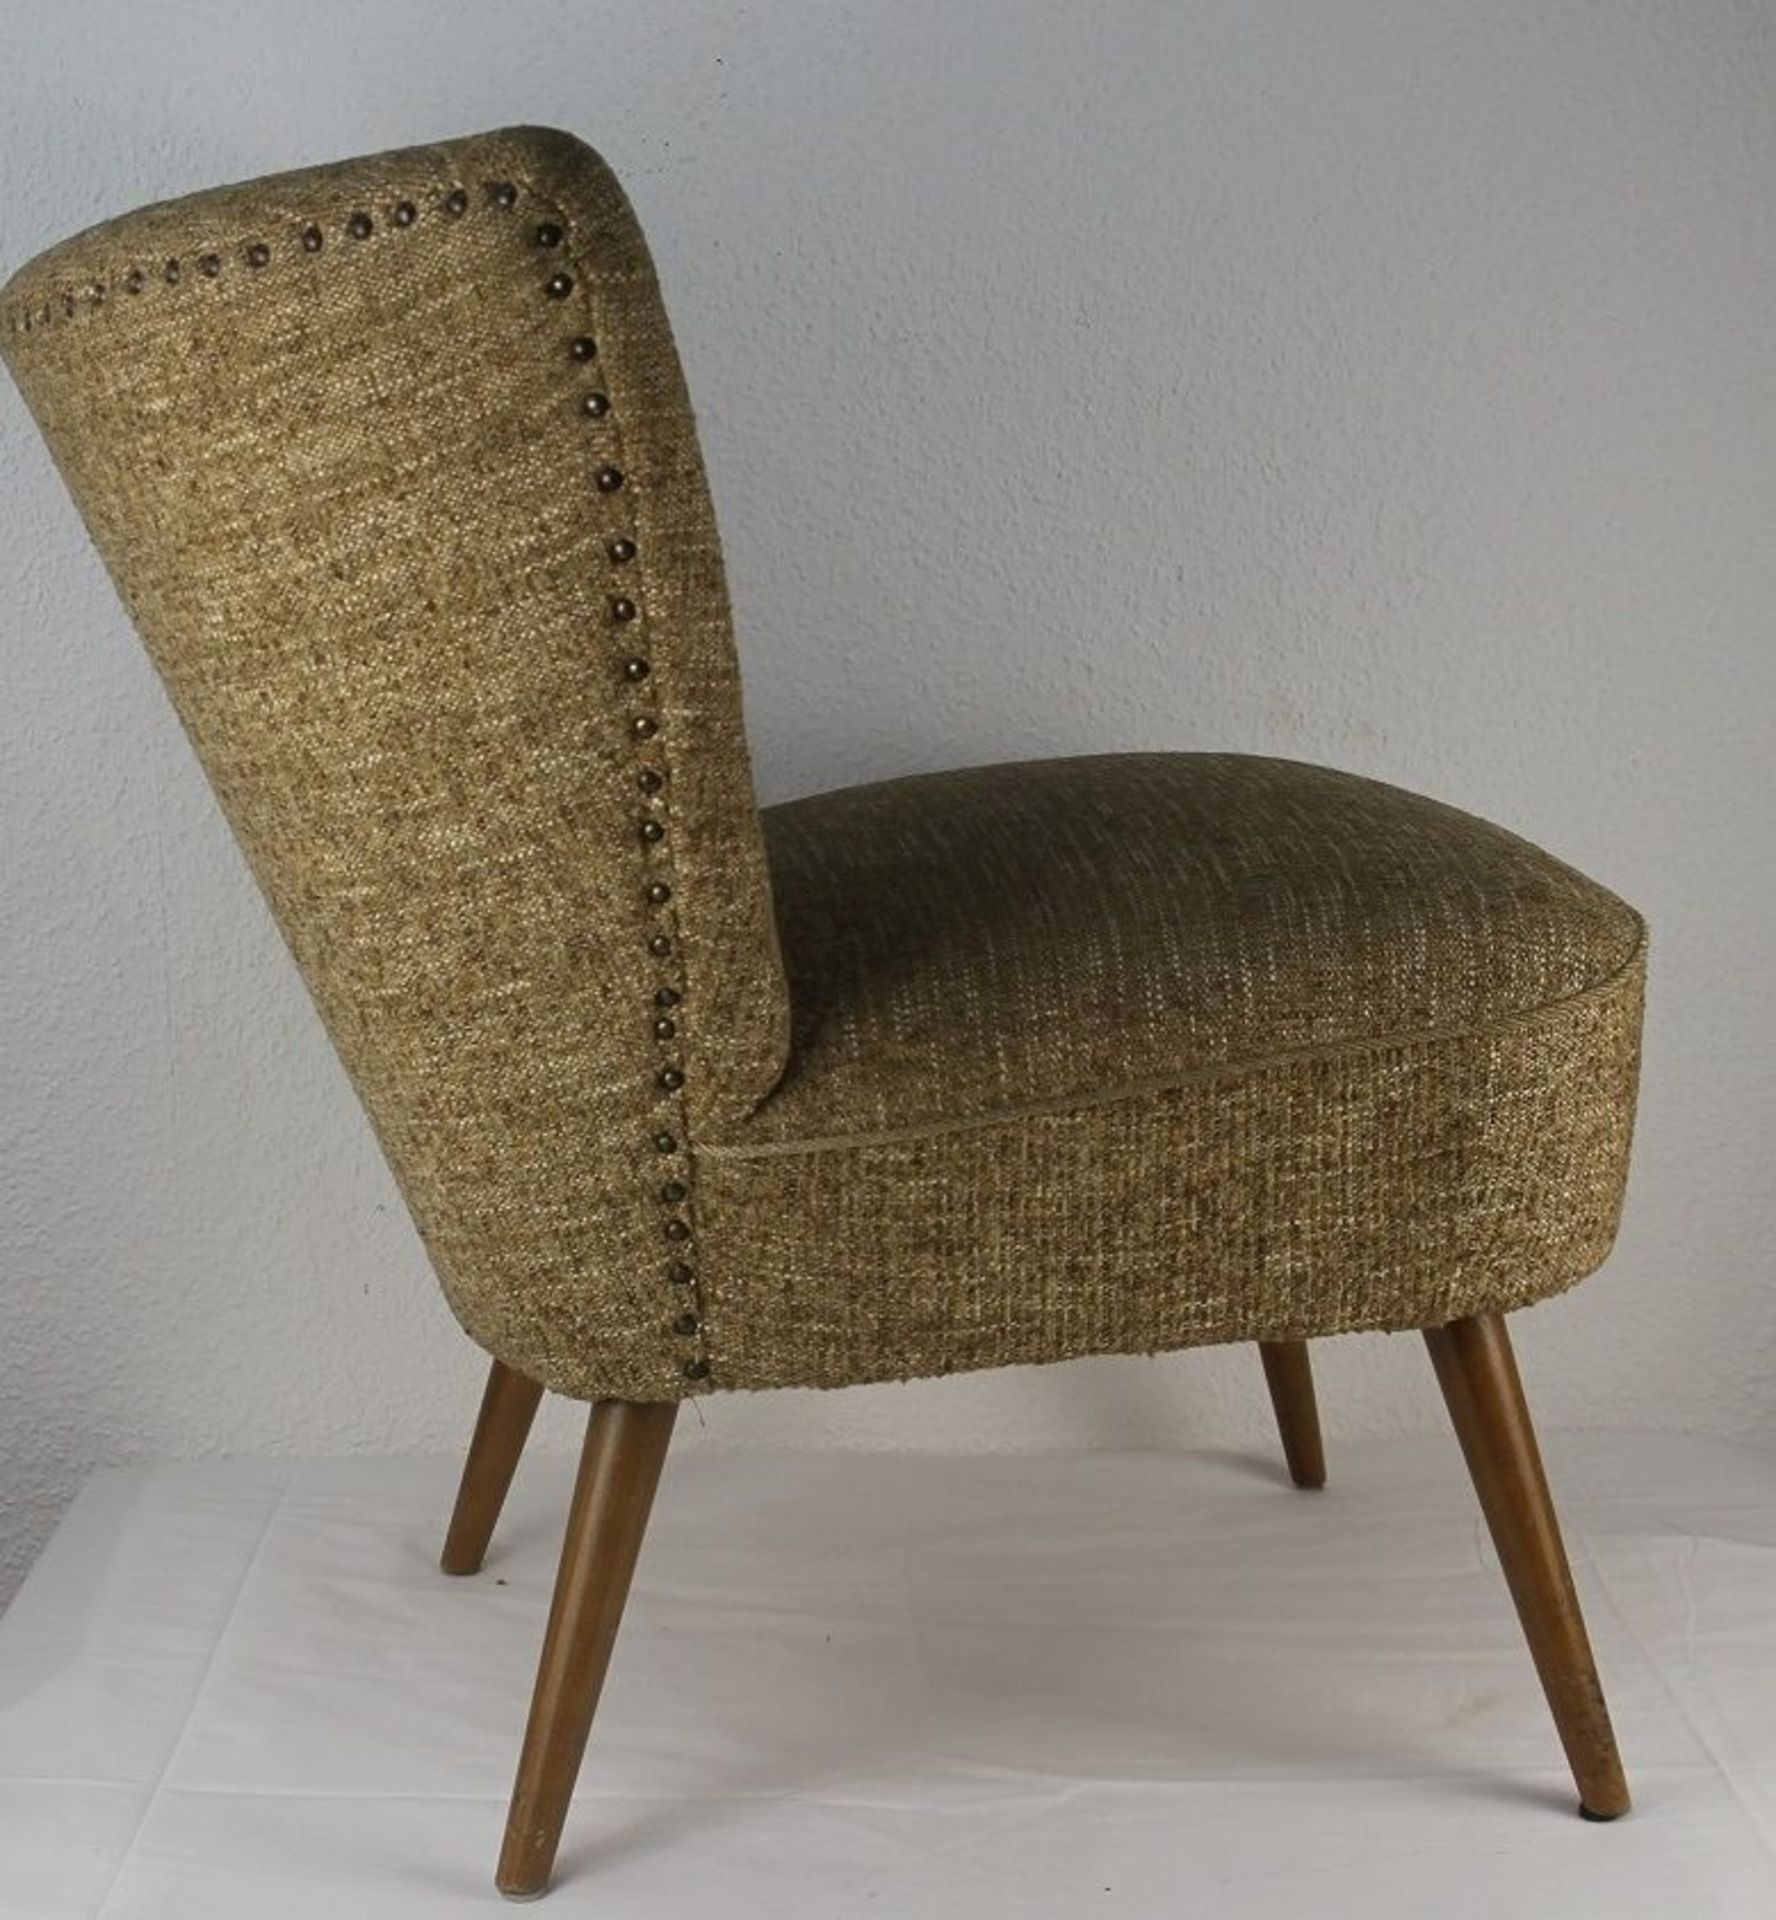 Zeitloser Designklassiker ! orig. 50er Jahre Sessel Cocktailsessel - Bild 3 aus 4